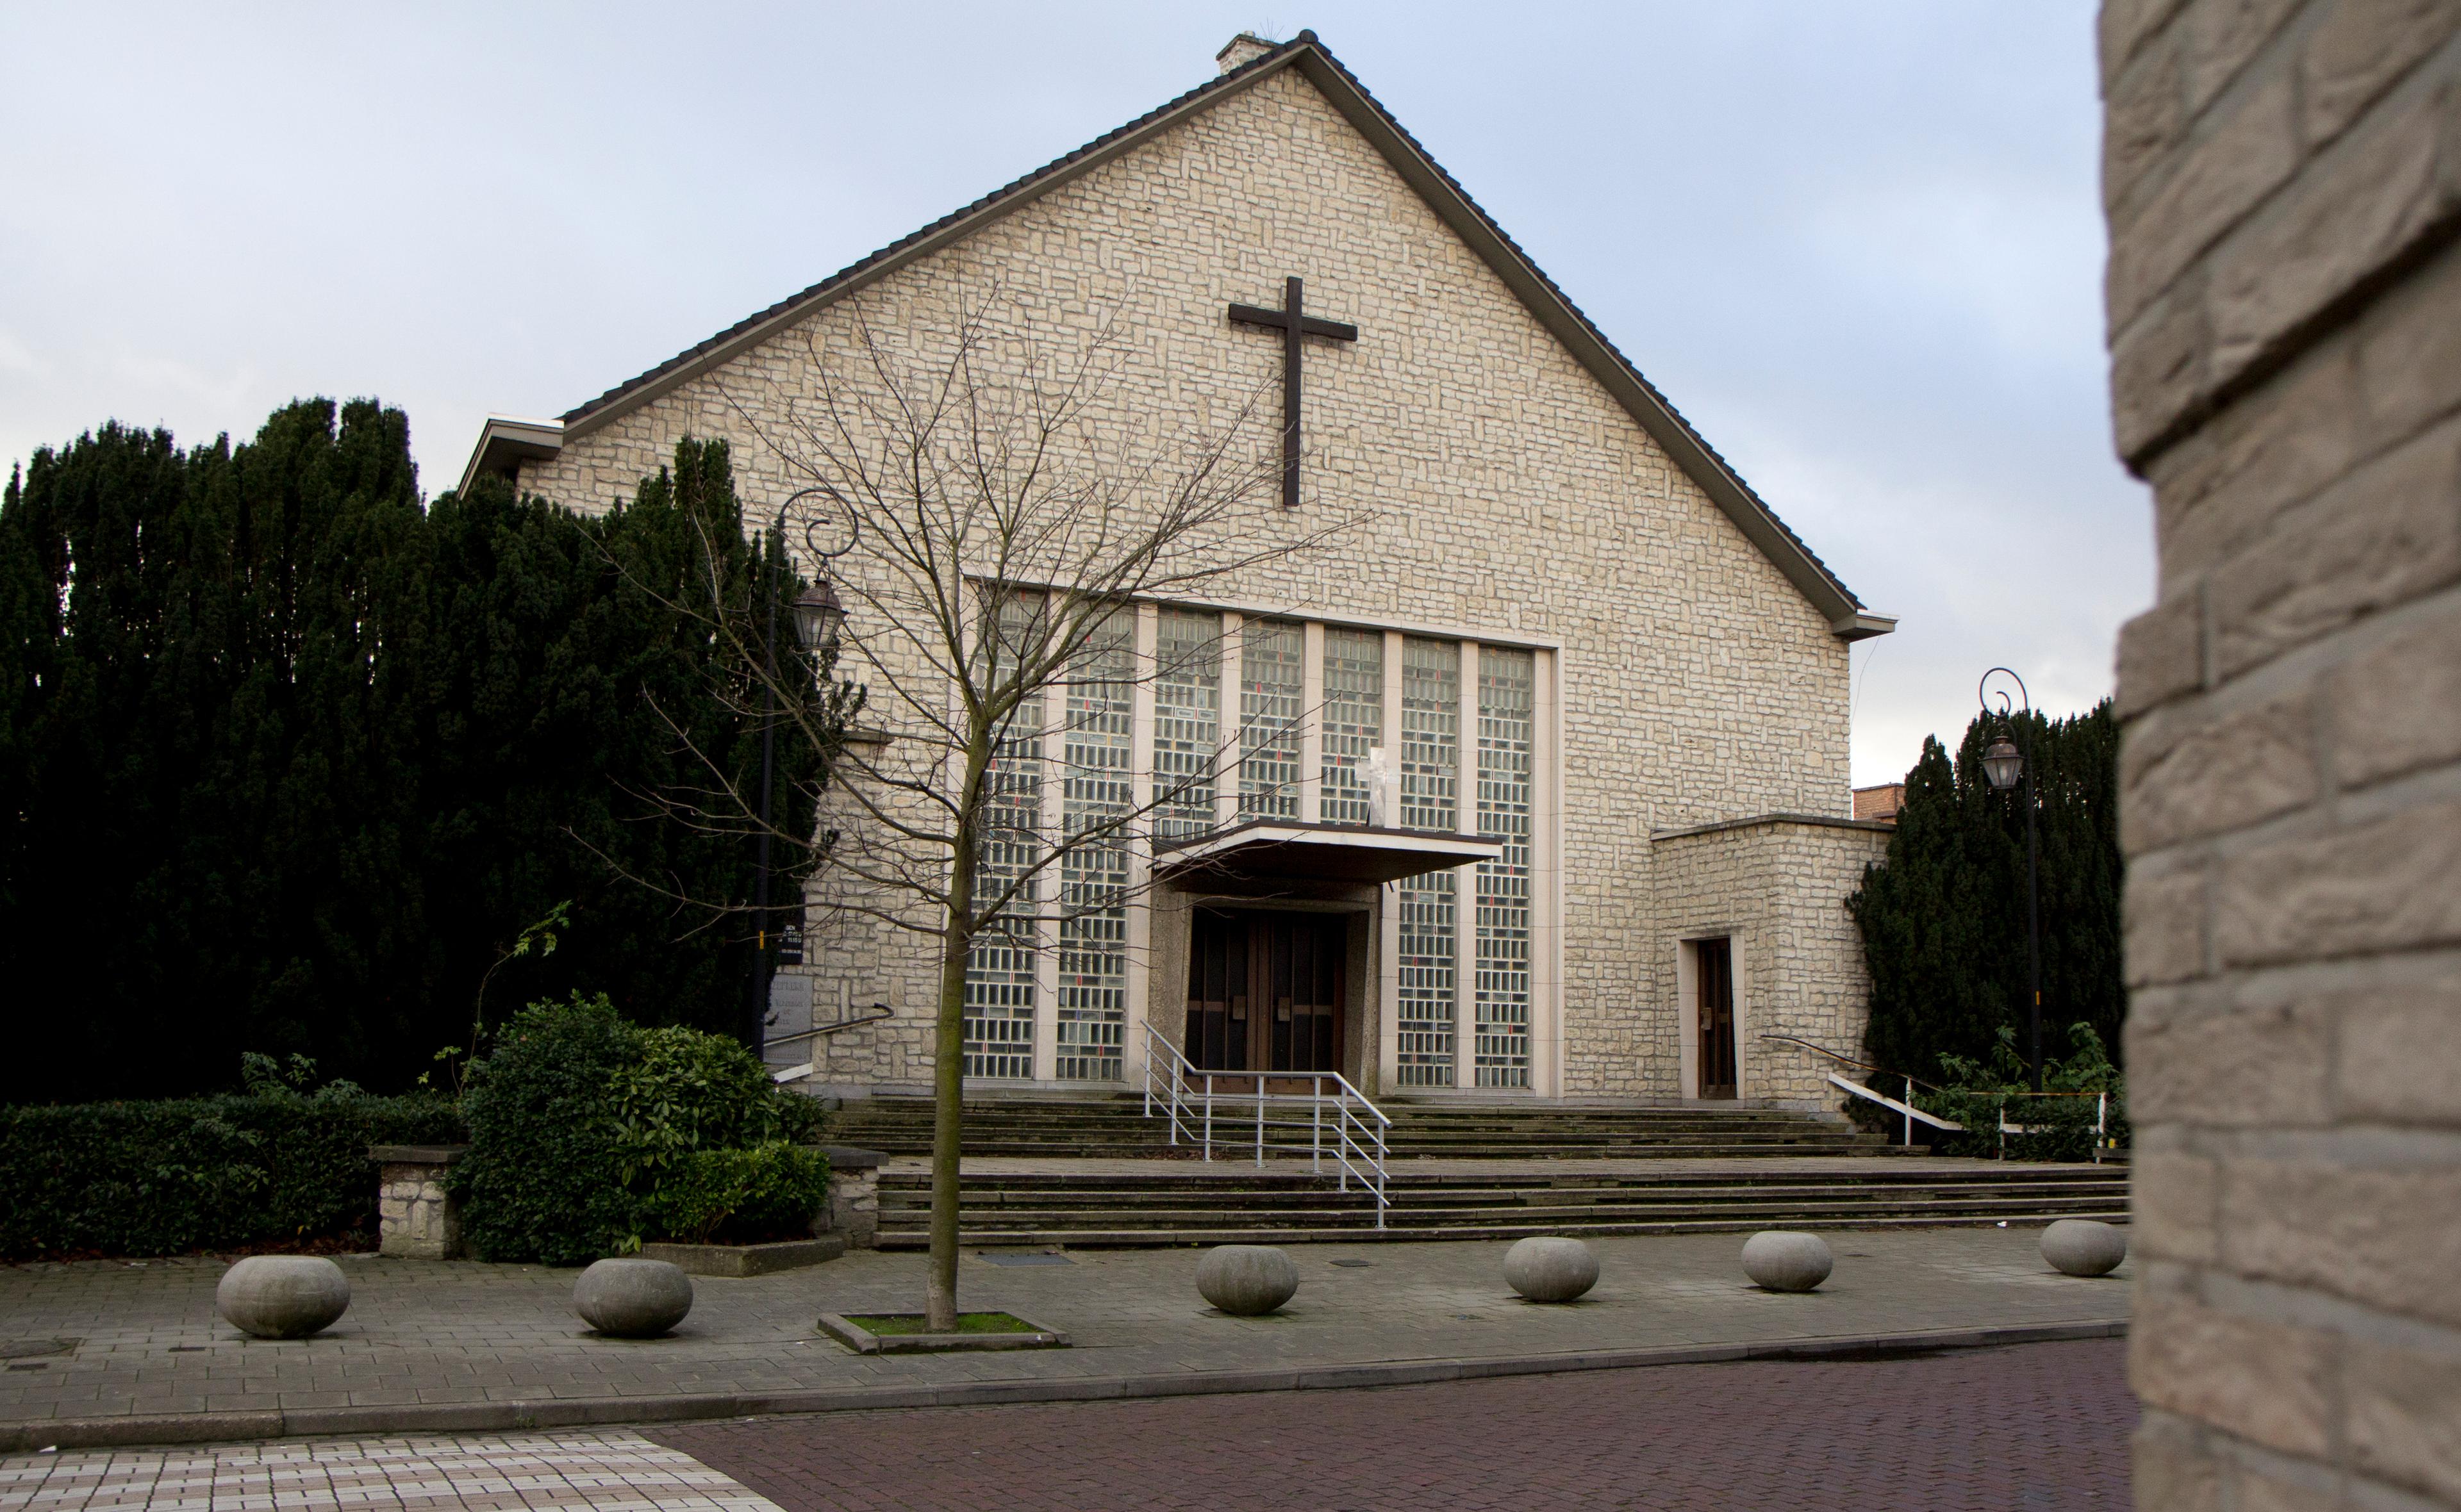 gospelkerk